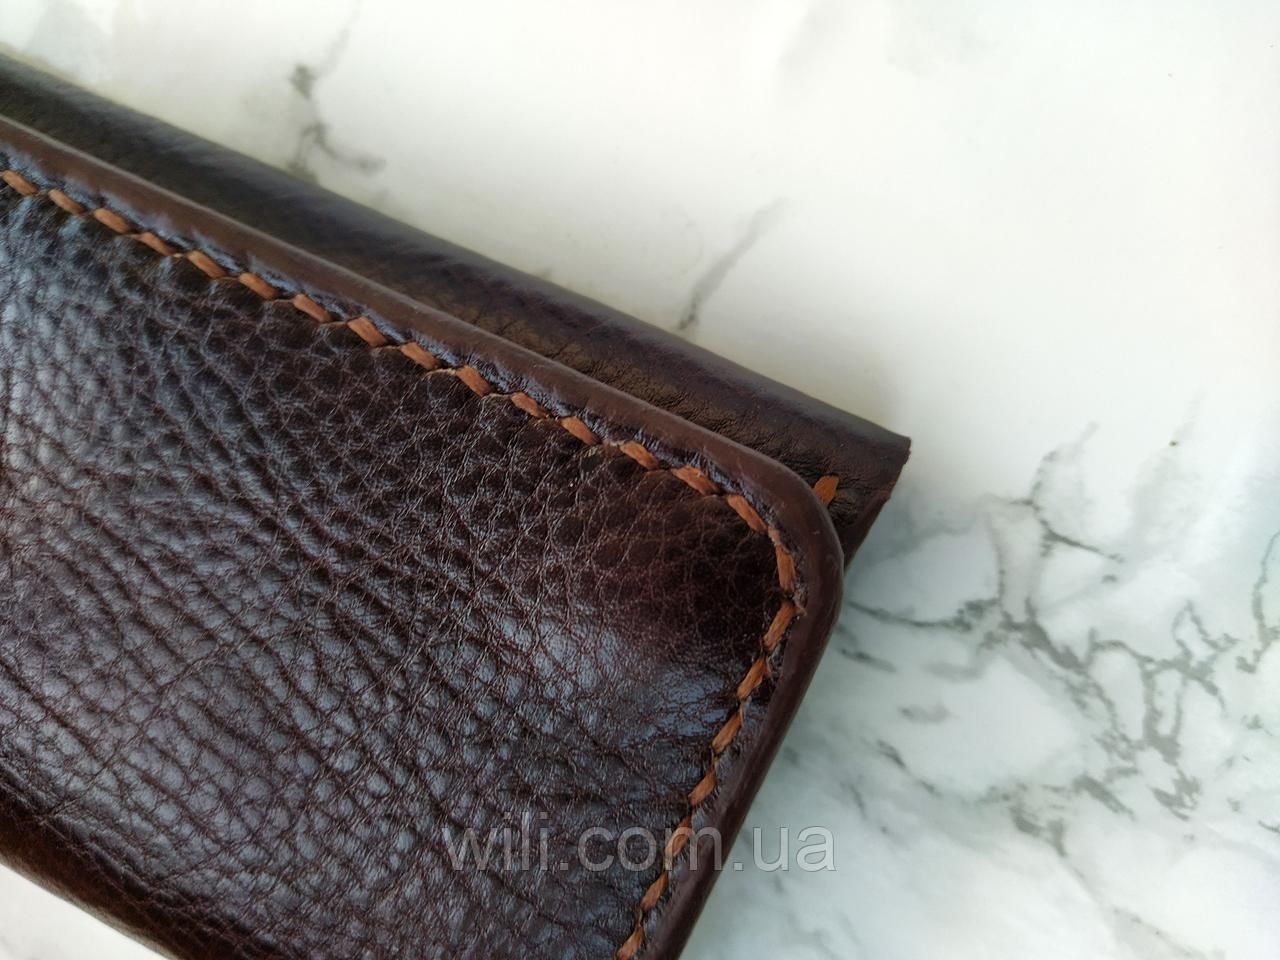 Чоловічий гаманець з натуральної шкіри ручної роботи "Mono"